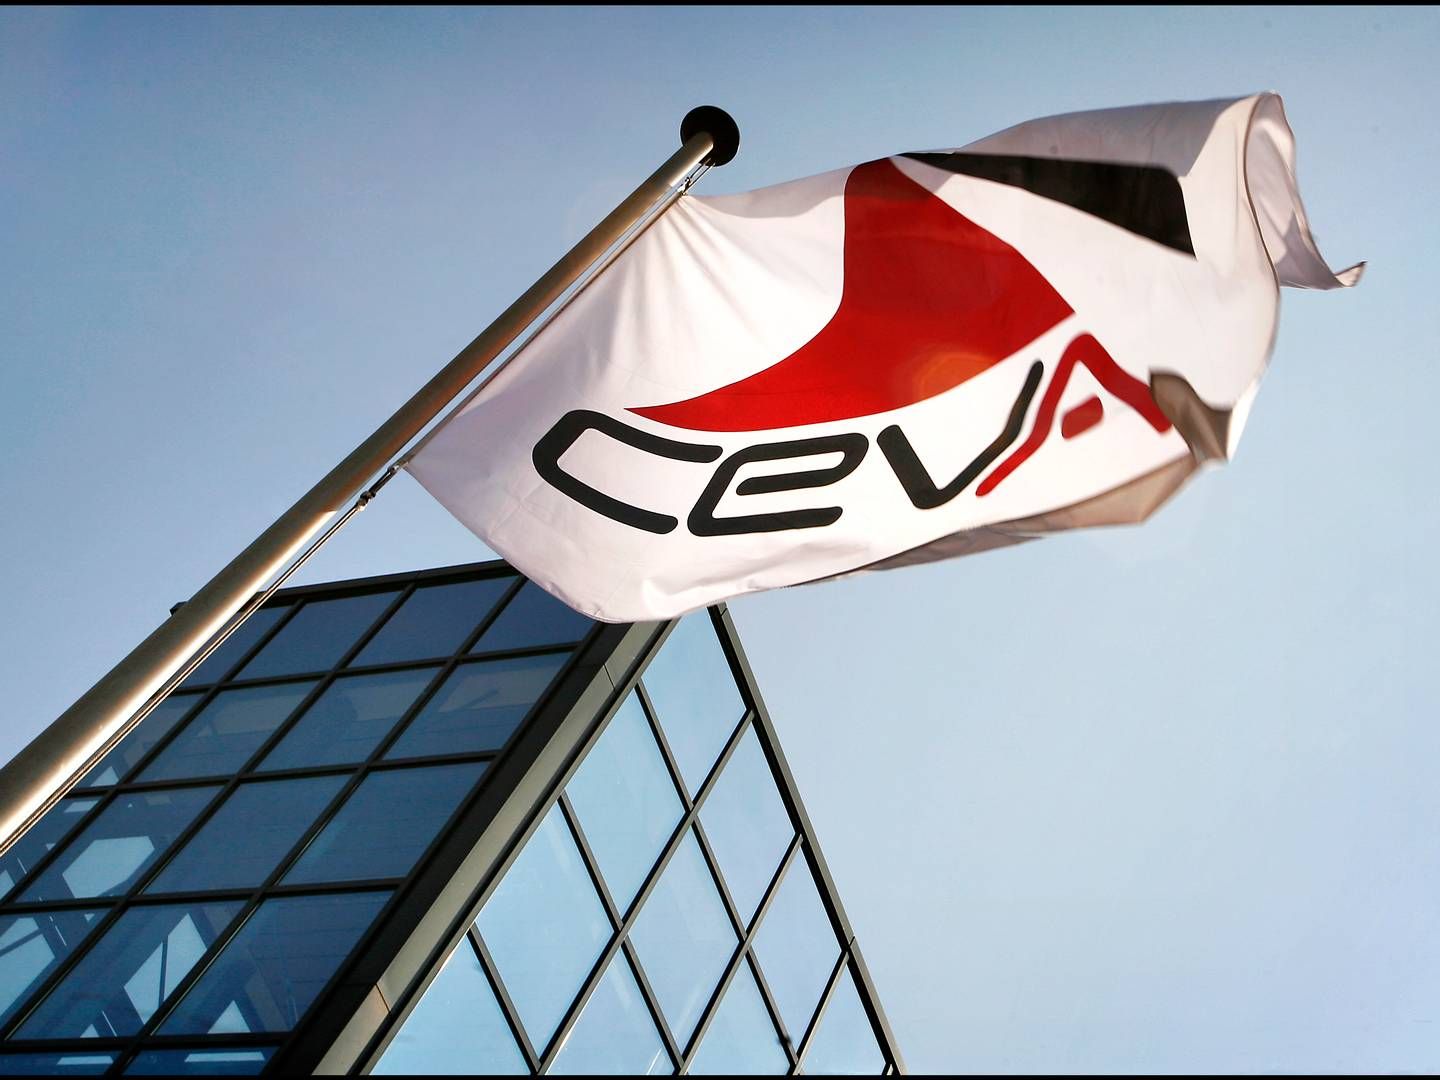 Ifølge Ceva bruger svindlerne bl.a. selskabets logo, brevhoved og signaturer. | Foto: Ceva Logistics